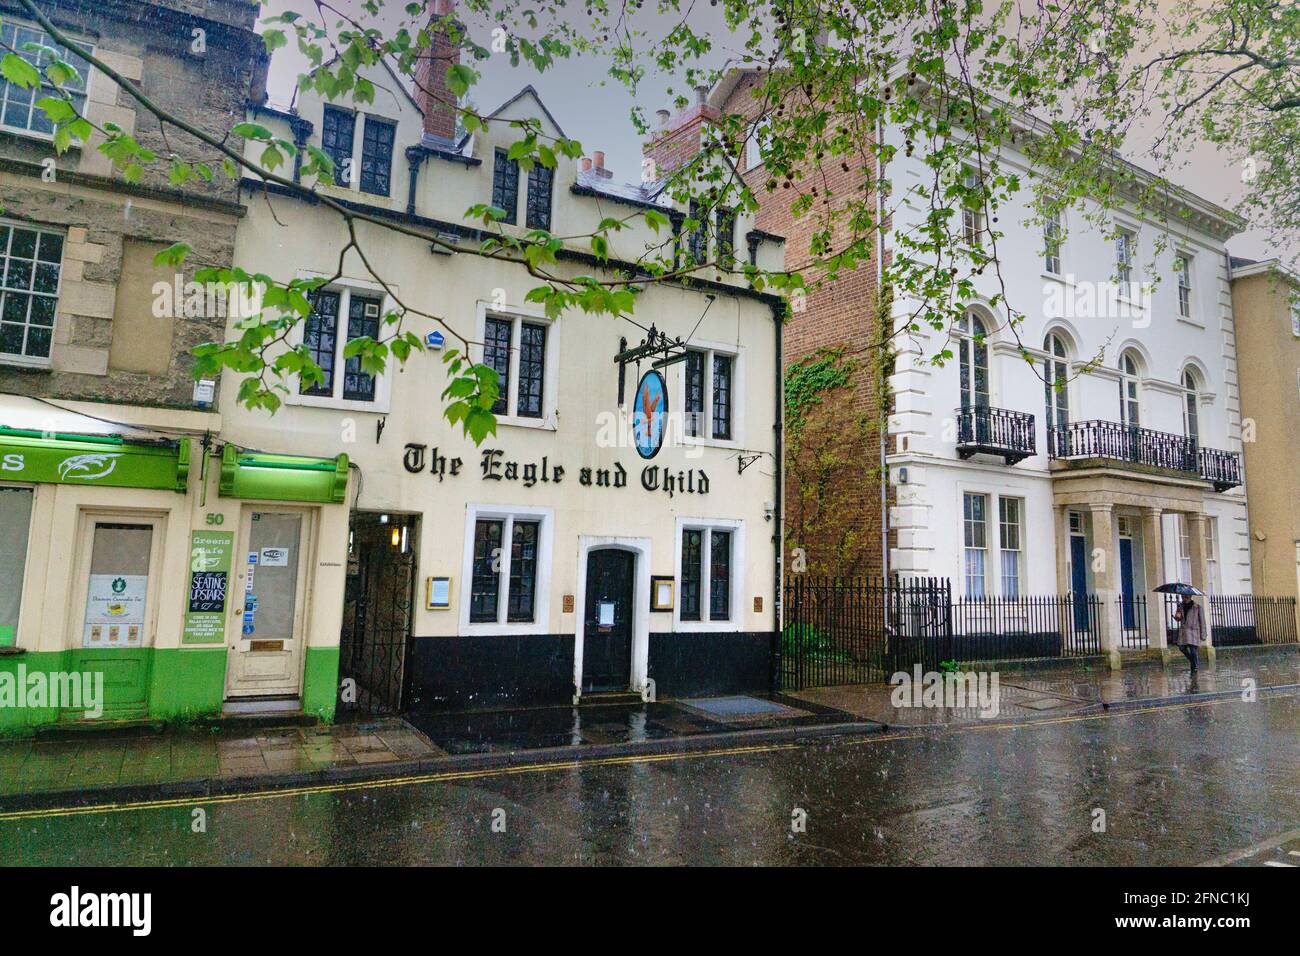 The Eagle and Child, l'un des plus anciens pubs d'Oxford, St Giles, Oxford, est en cours de rénovation pour convertir les étages supérieurs en chambres d'hôtel. Banque D'Images